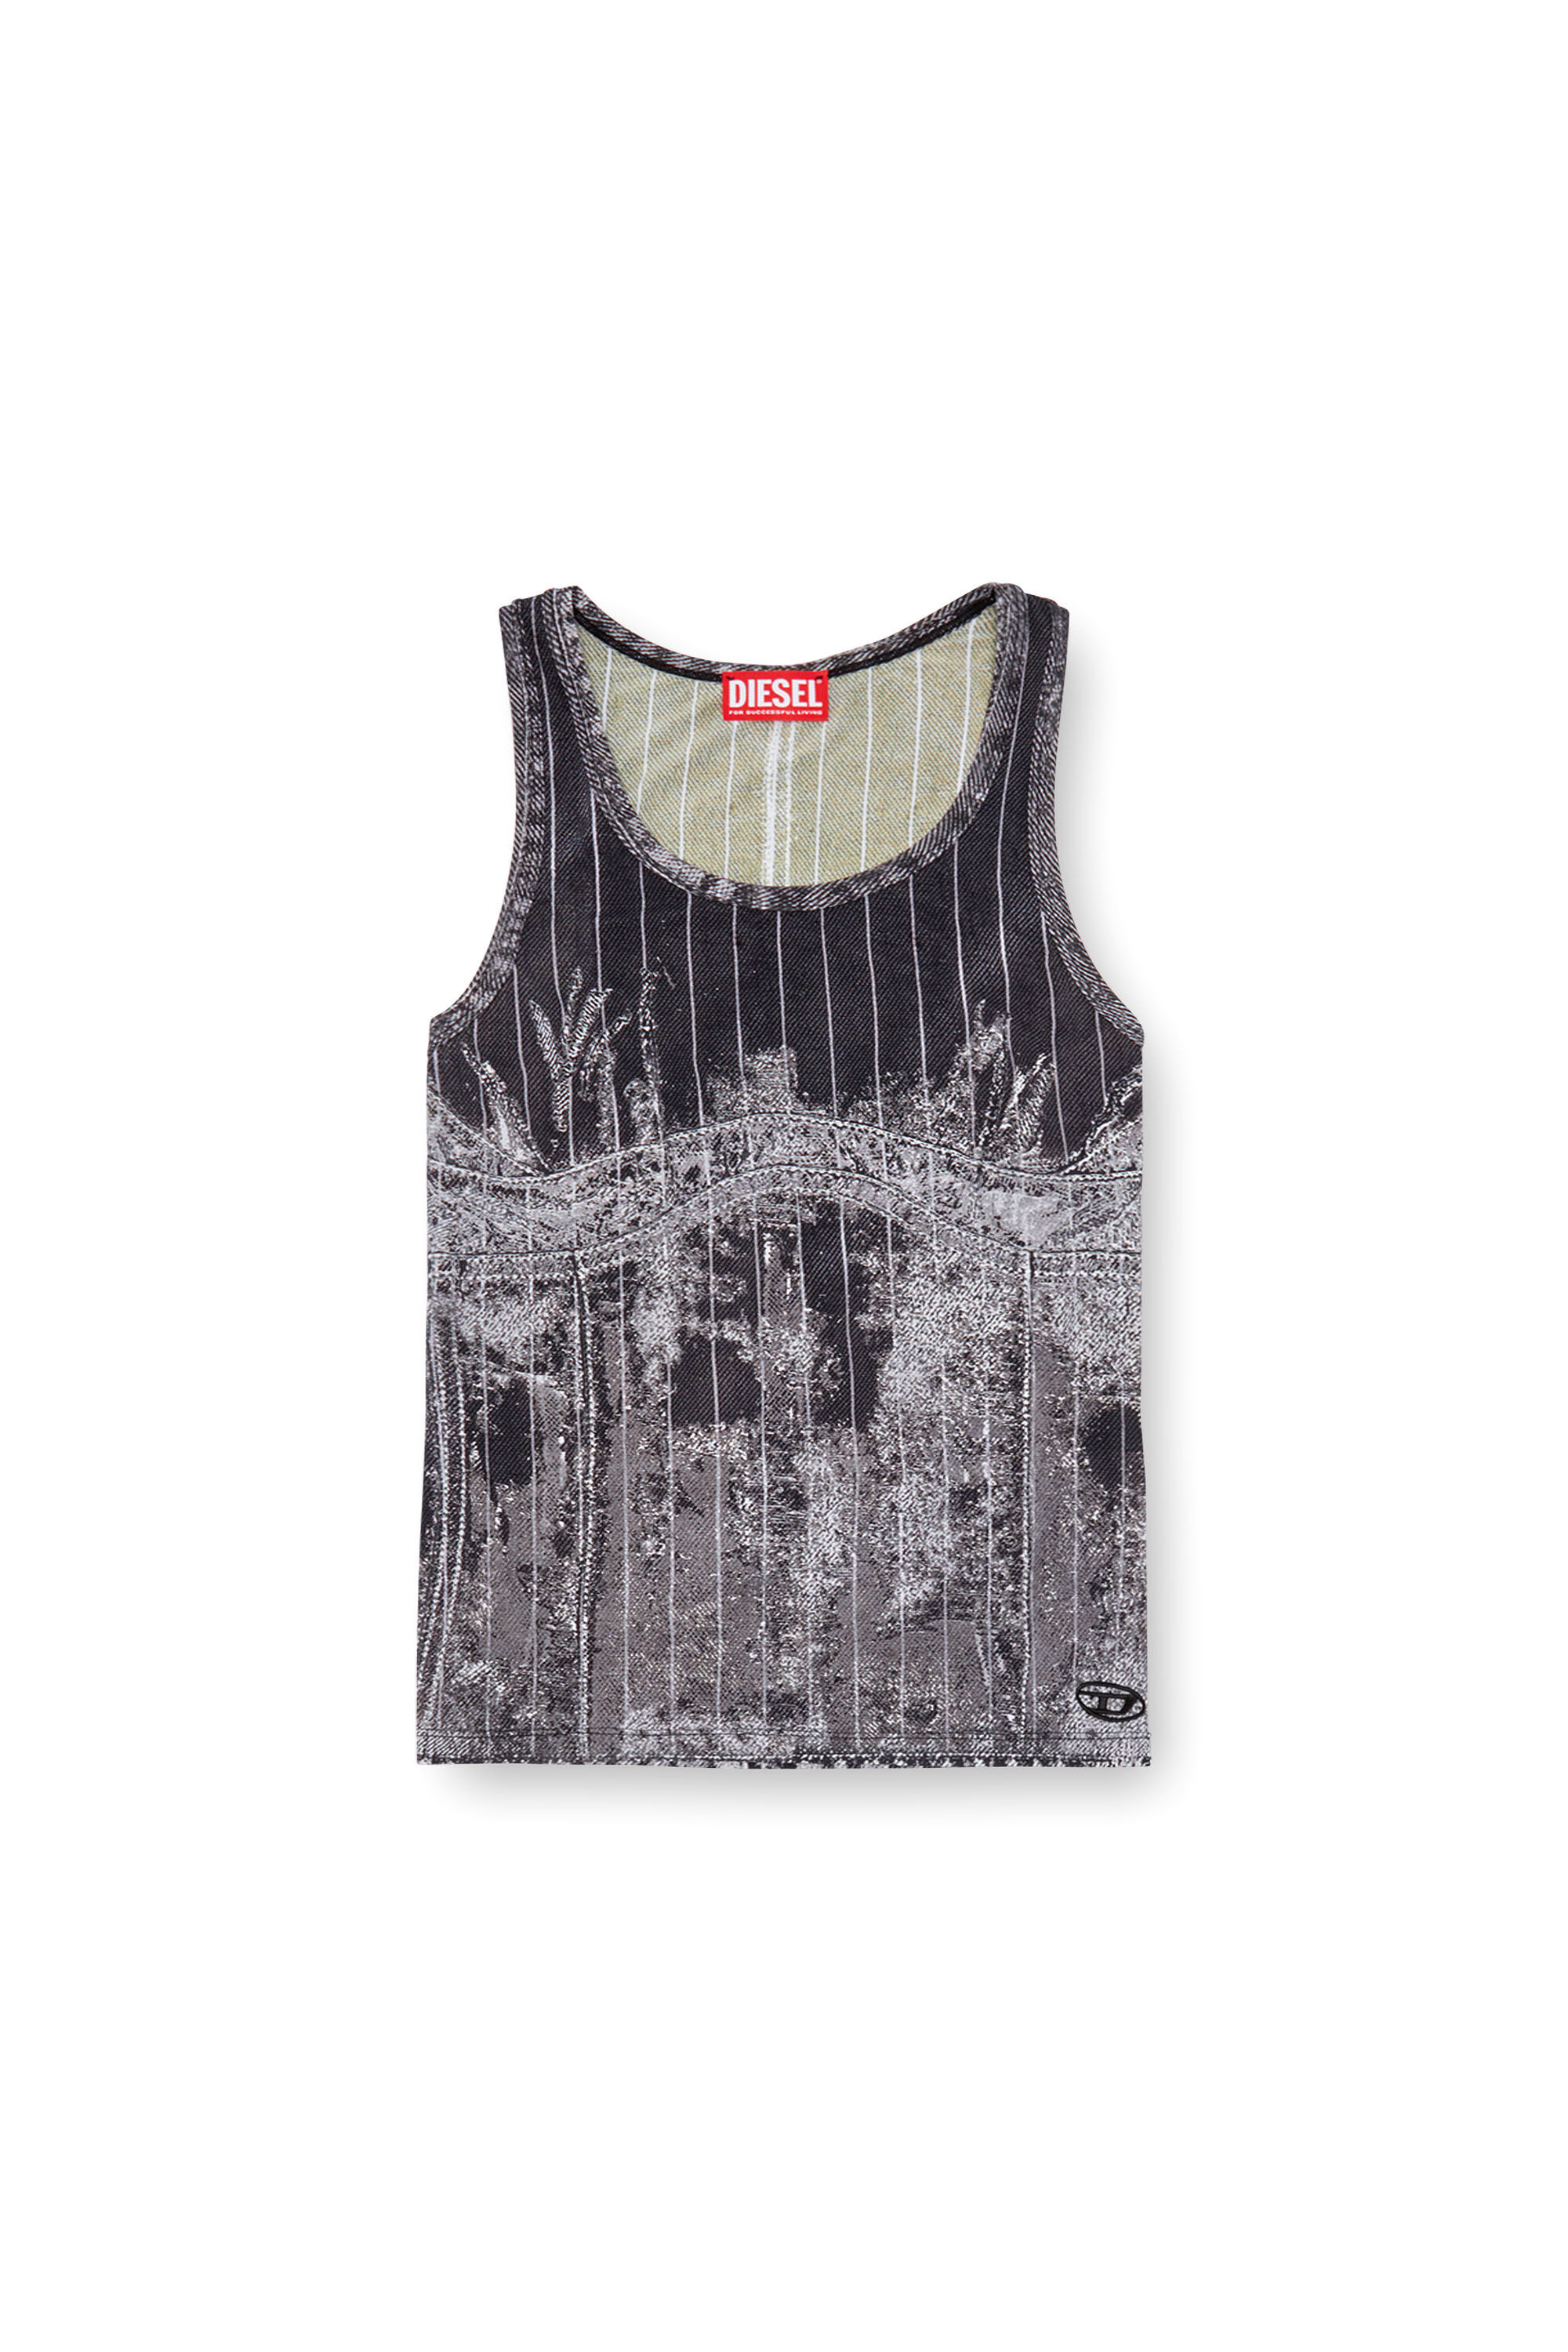 Diesel - T-STRIPE, Mujer Camiseta sin mangas con estampado de denim a rayas finas in Negro - Image 2